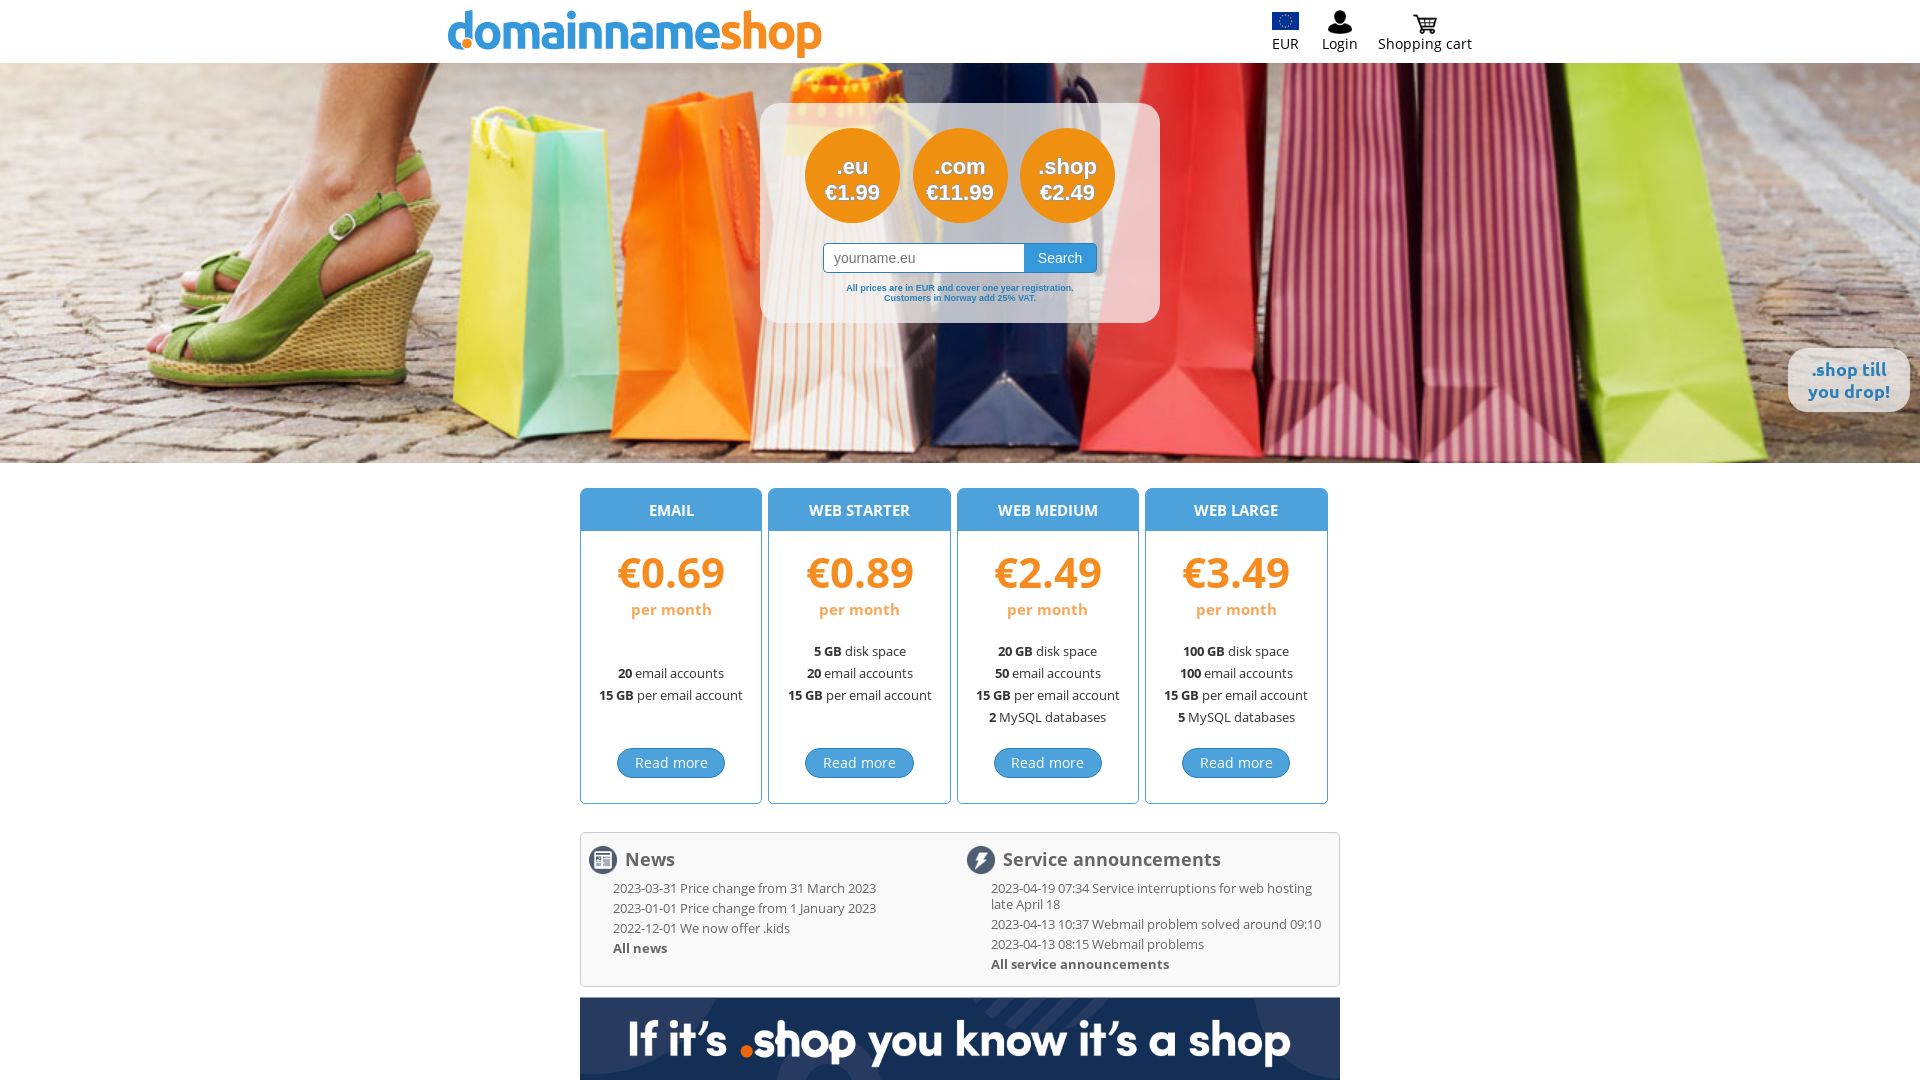 Stato del sito web domainnameshop.com è   ONLINE